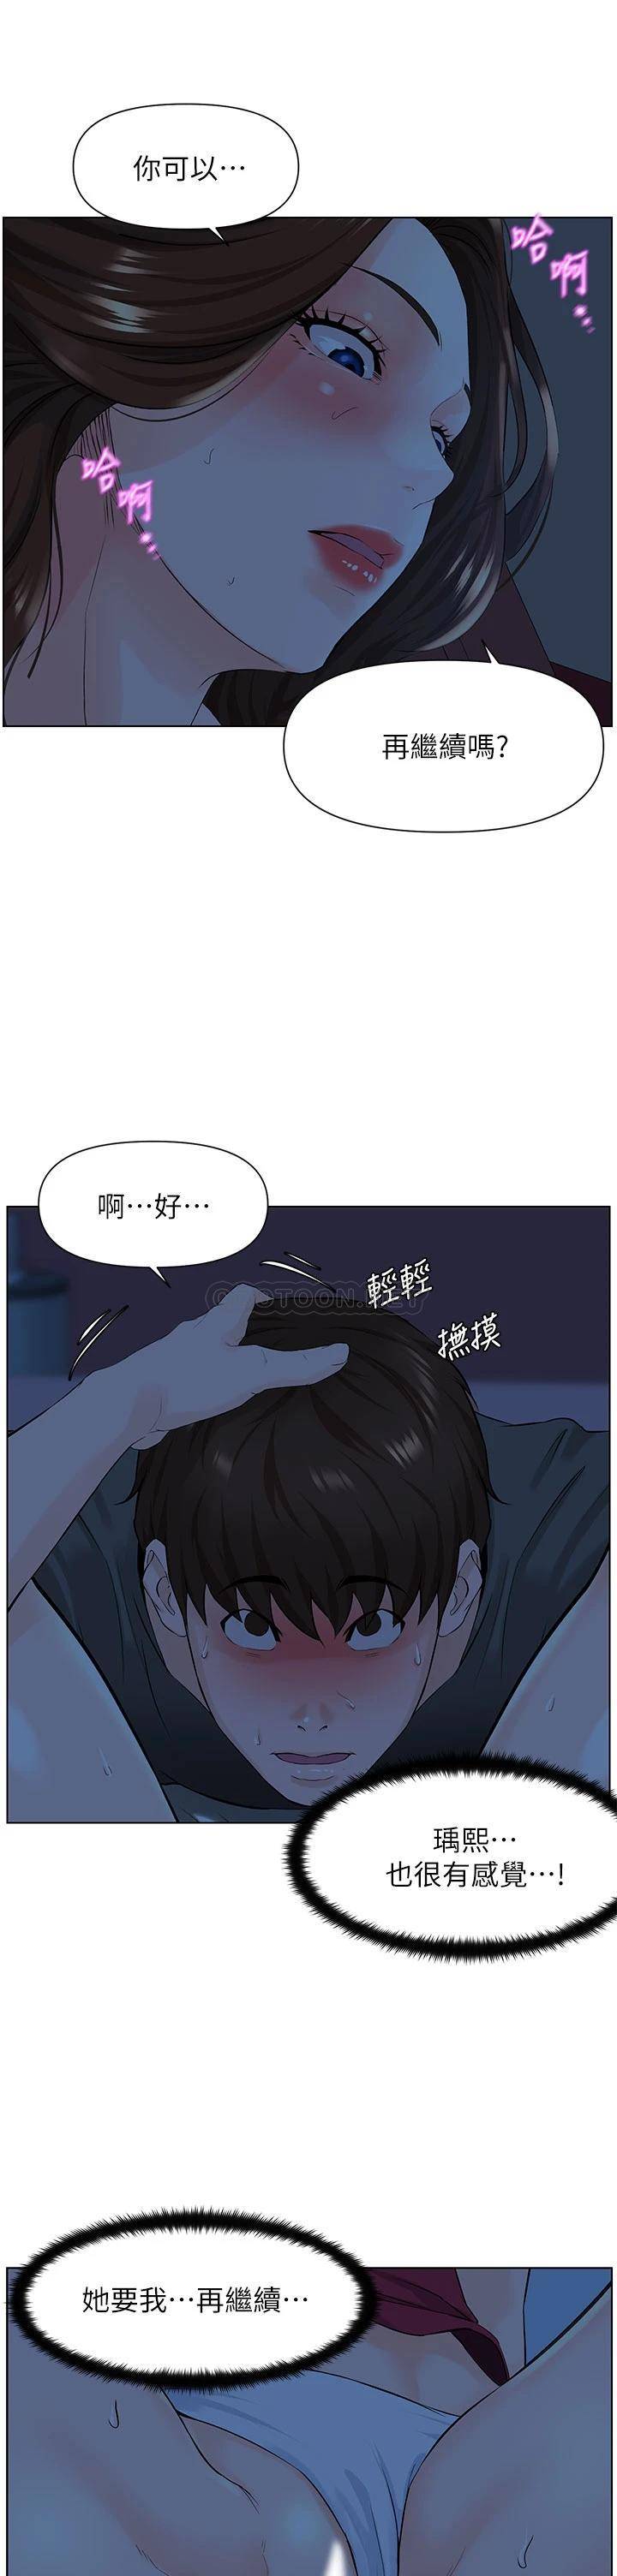 韩国污漫画 現上教學 第9话汗水淋漓的车震 22